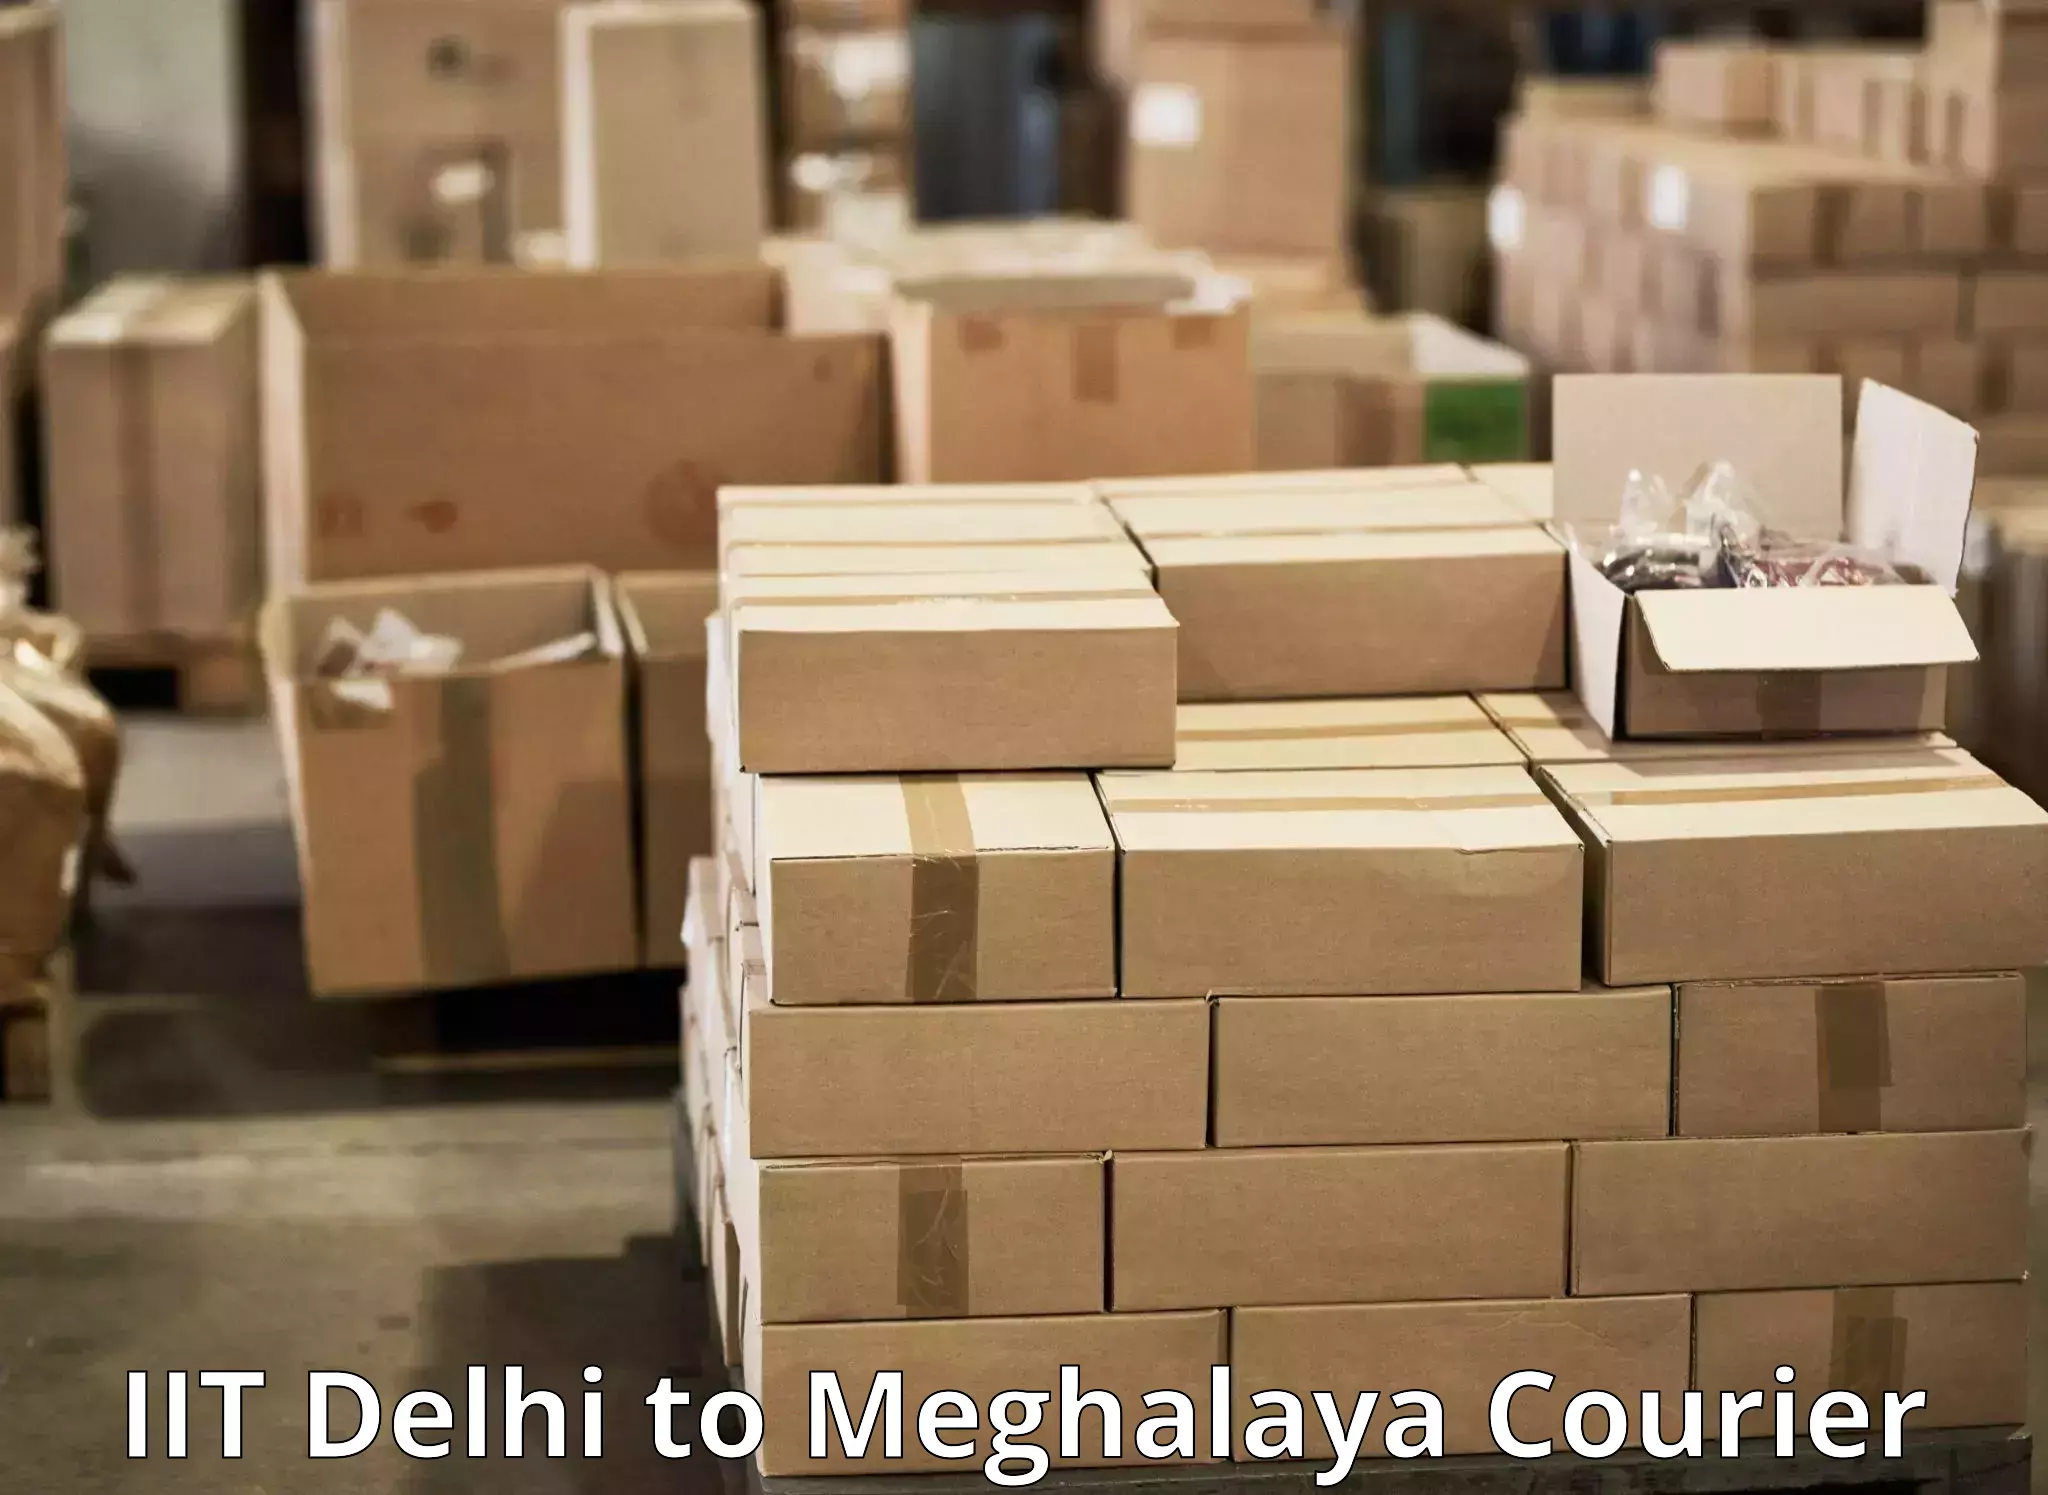 High-speed parcel service IIT Delhi to Jaintia Hills